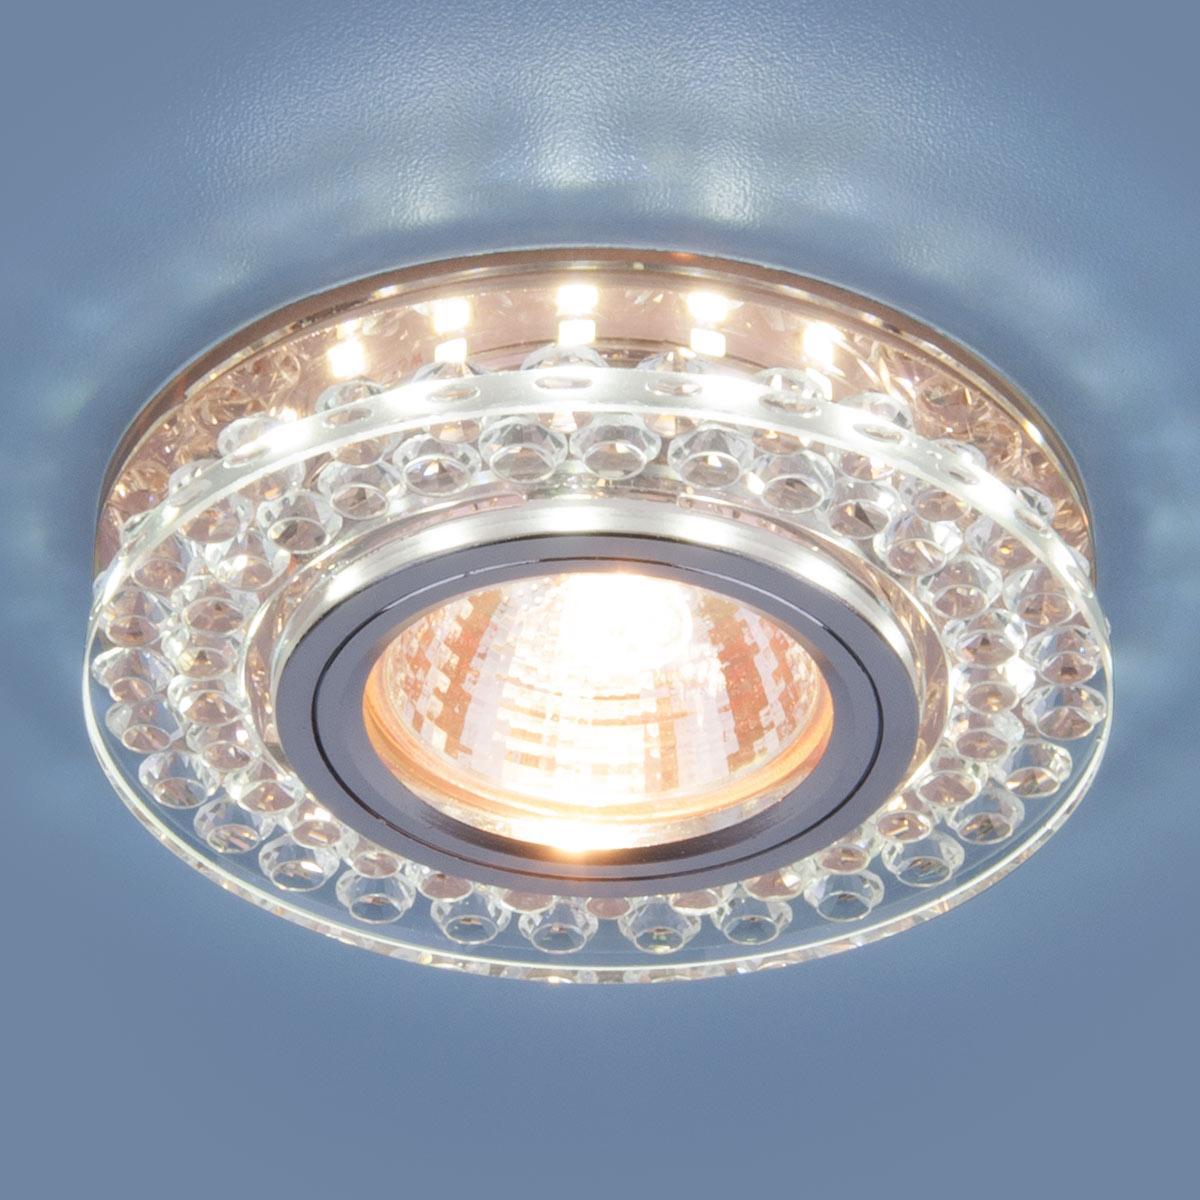 Точечный светильник со светодиодной подсветкой 8381 MR16 CL/GC прозрачный/тонированный